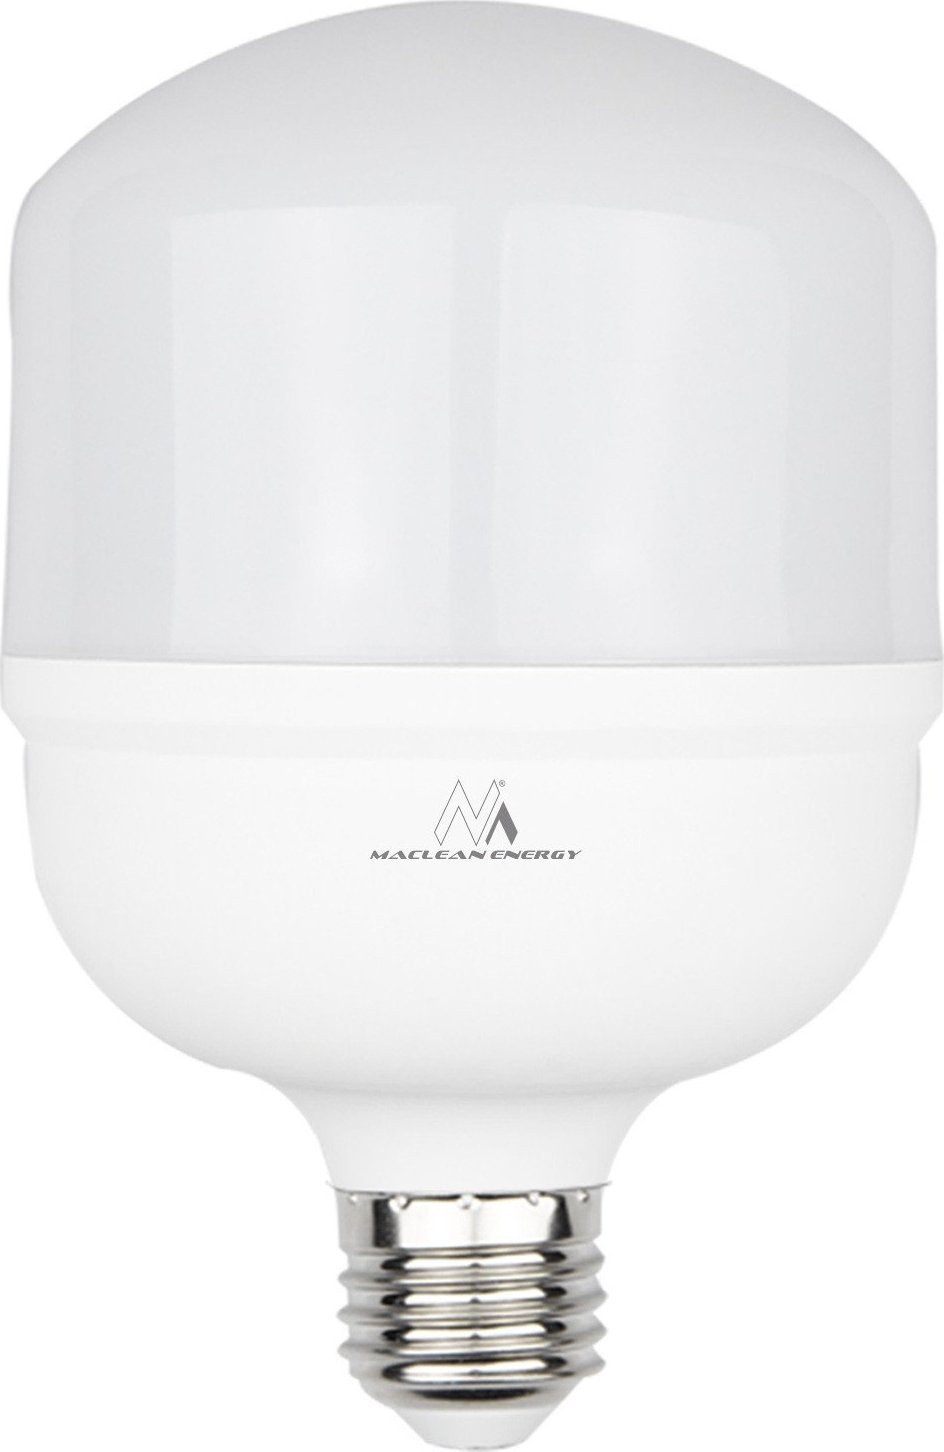 Bec LED Maclean Maclean, E27, 48W, 220-240V AC, alb neutru, 4000K, 5040lm, MCE304 NW